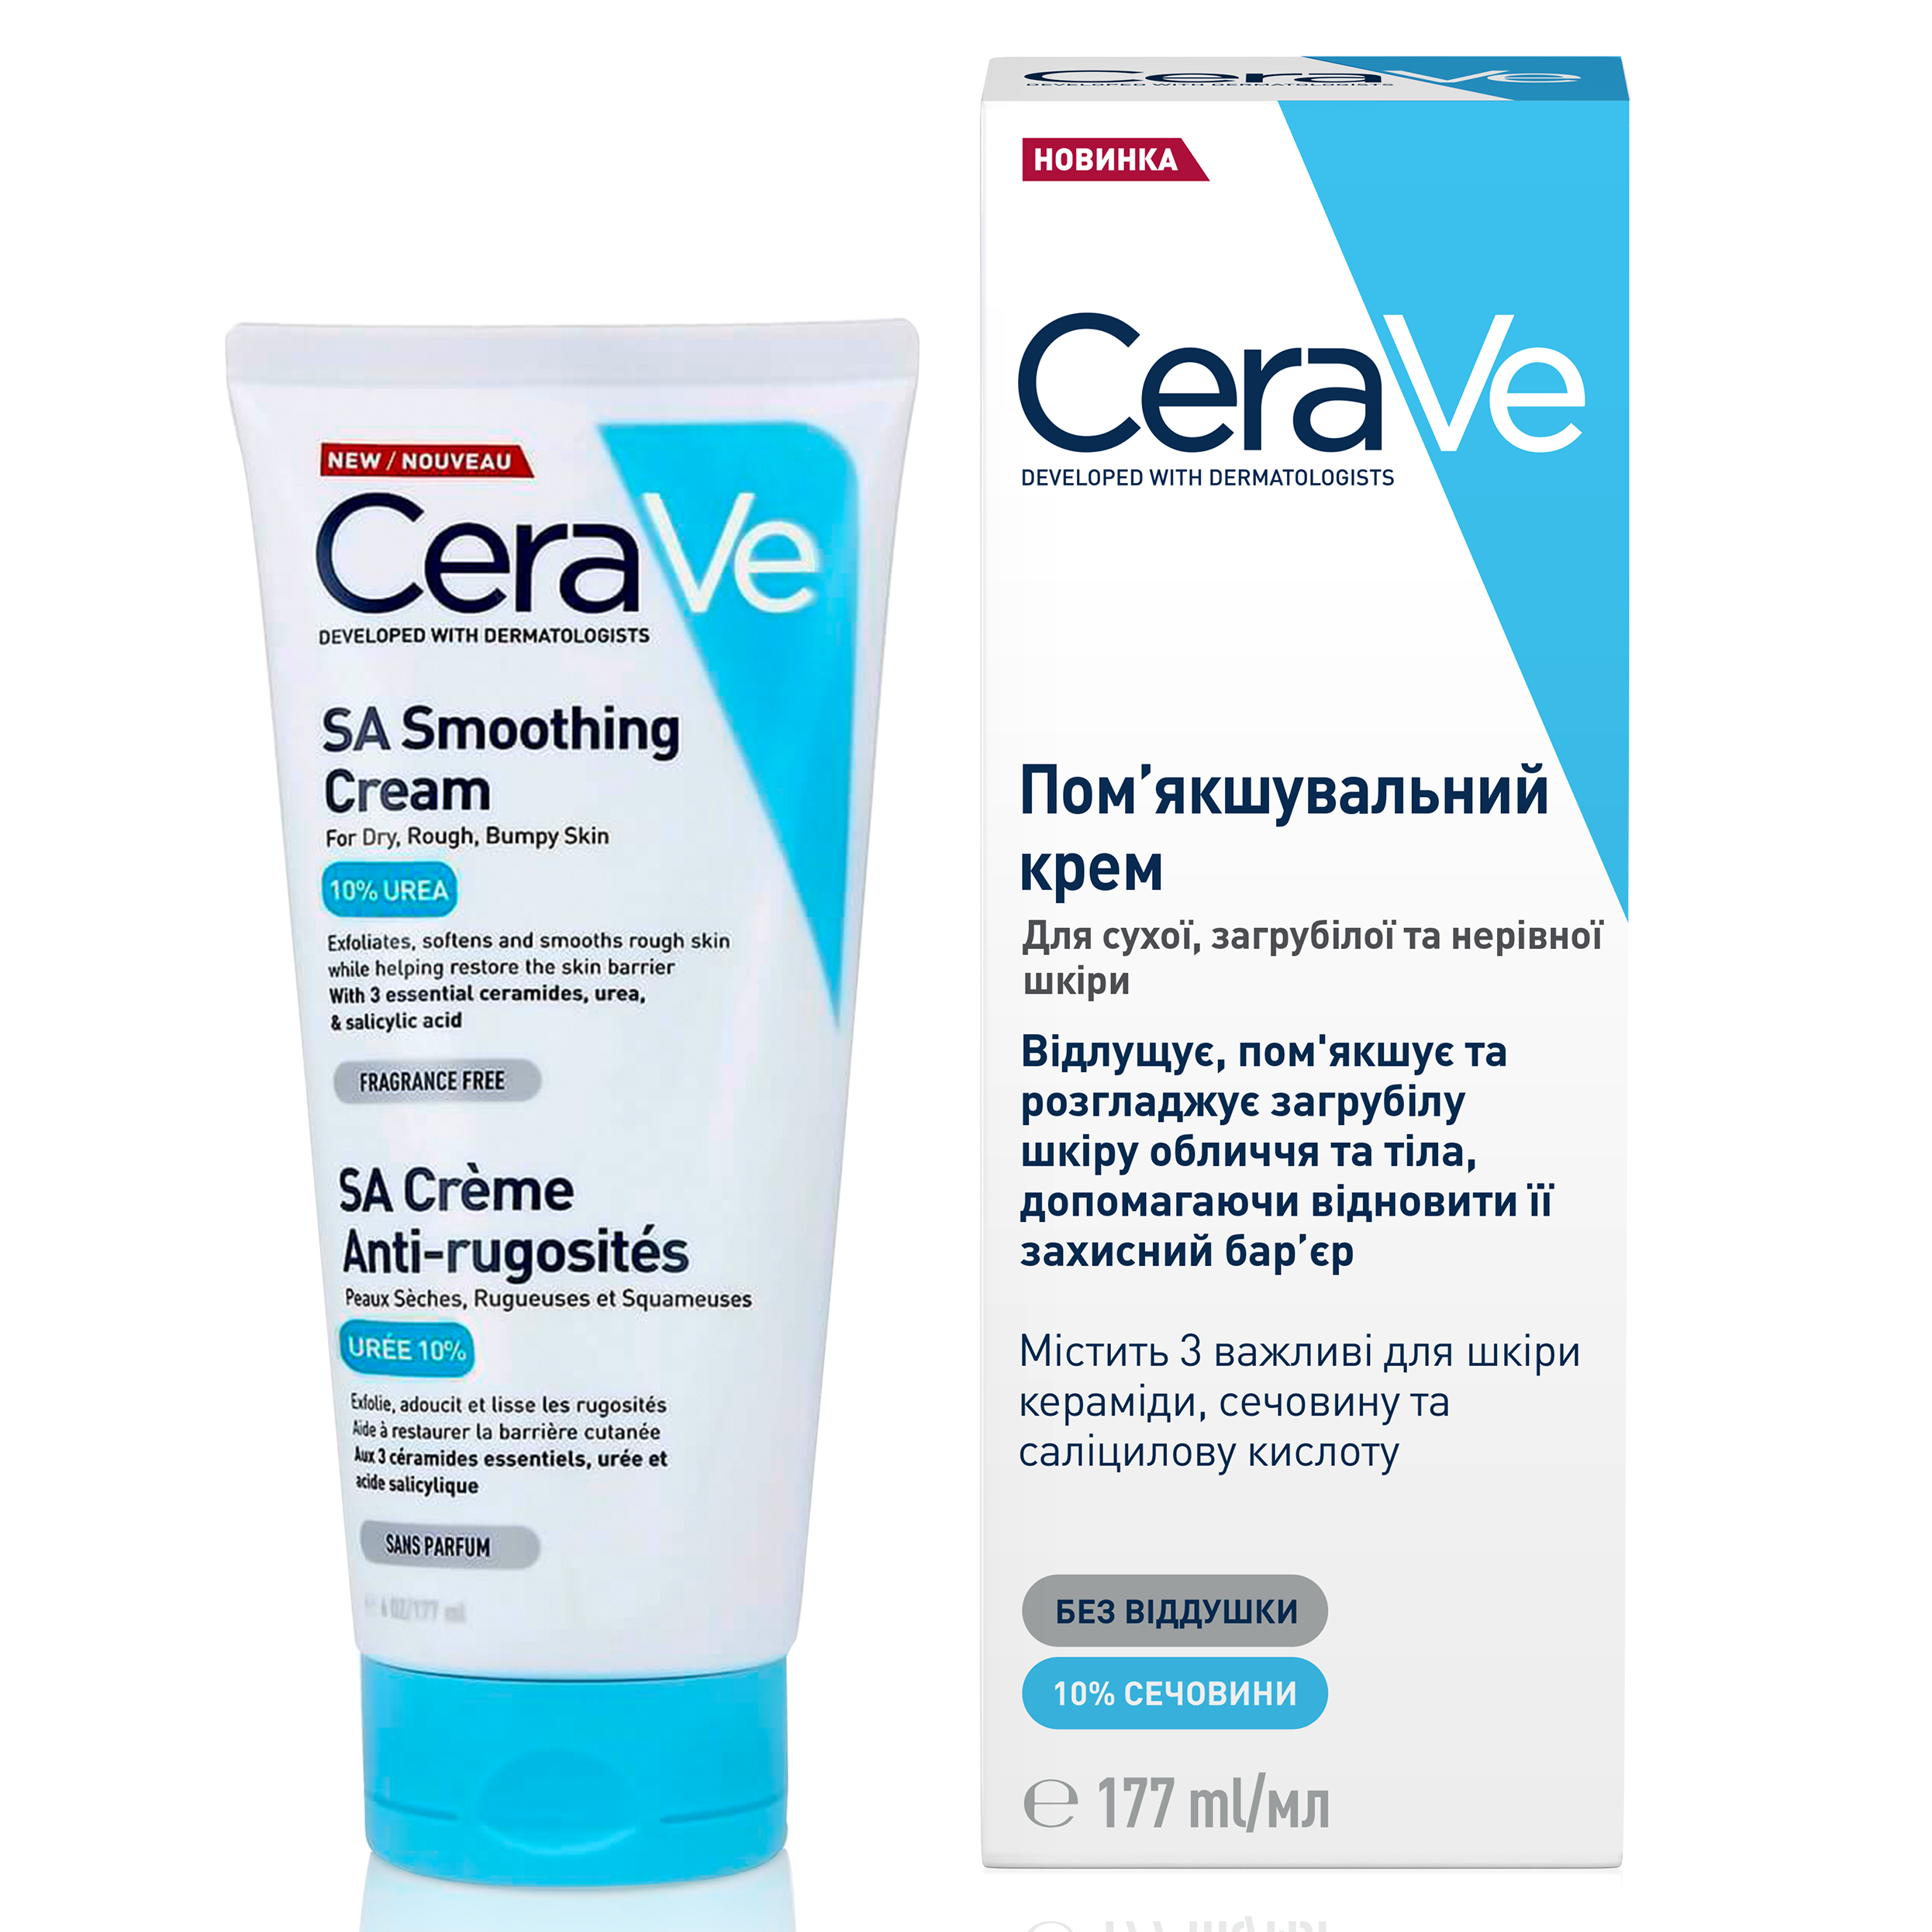 Смягчающий крем CeraVe для сухой, загрубевшей и неровной кожи лица и тела, 177 мл (MB190800) - фото 2